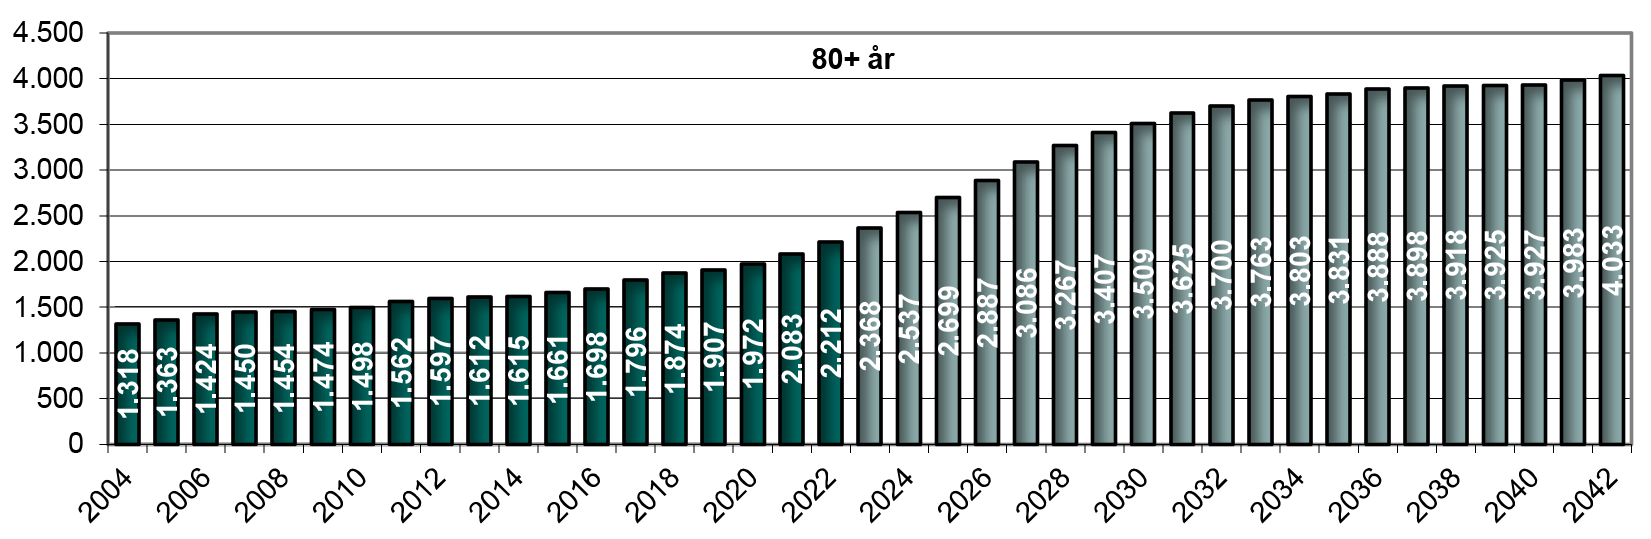 Figur 13. Hidtidig og forventet antal 80+ årige (1. januar)